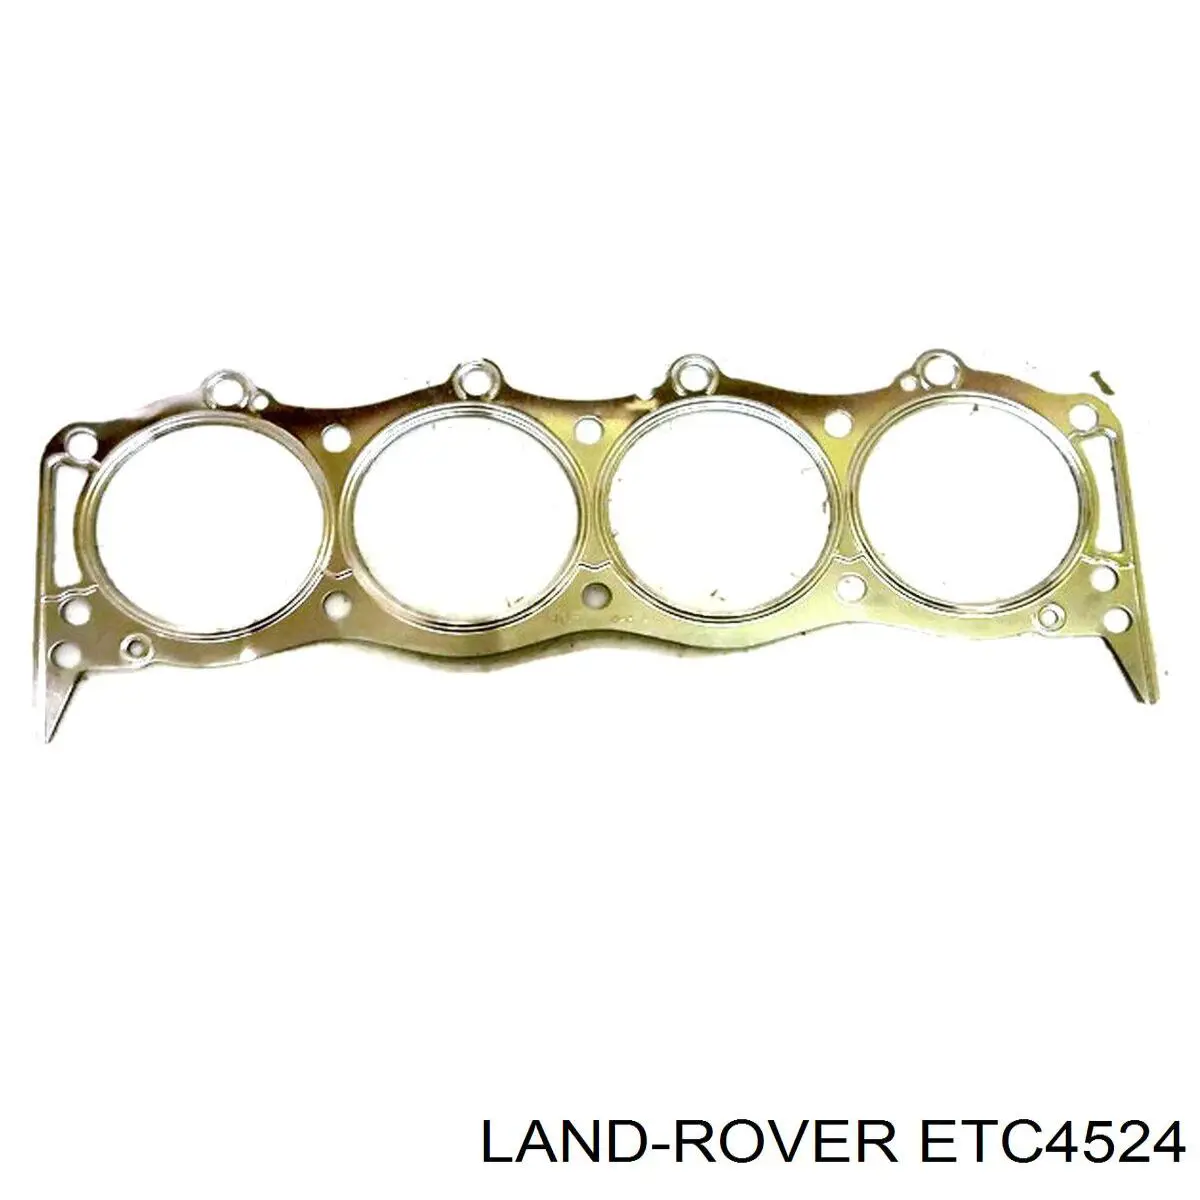 ETC4524 Land Rover junta, tubo de escape silenciador